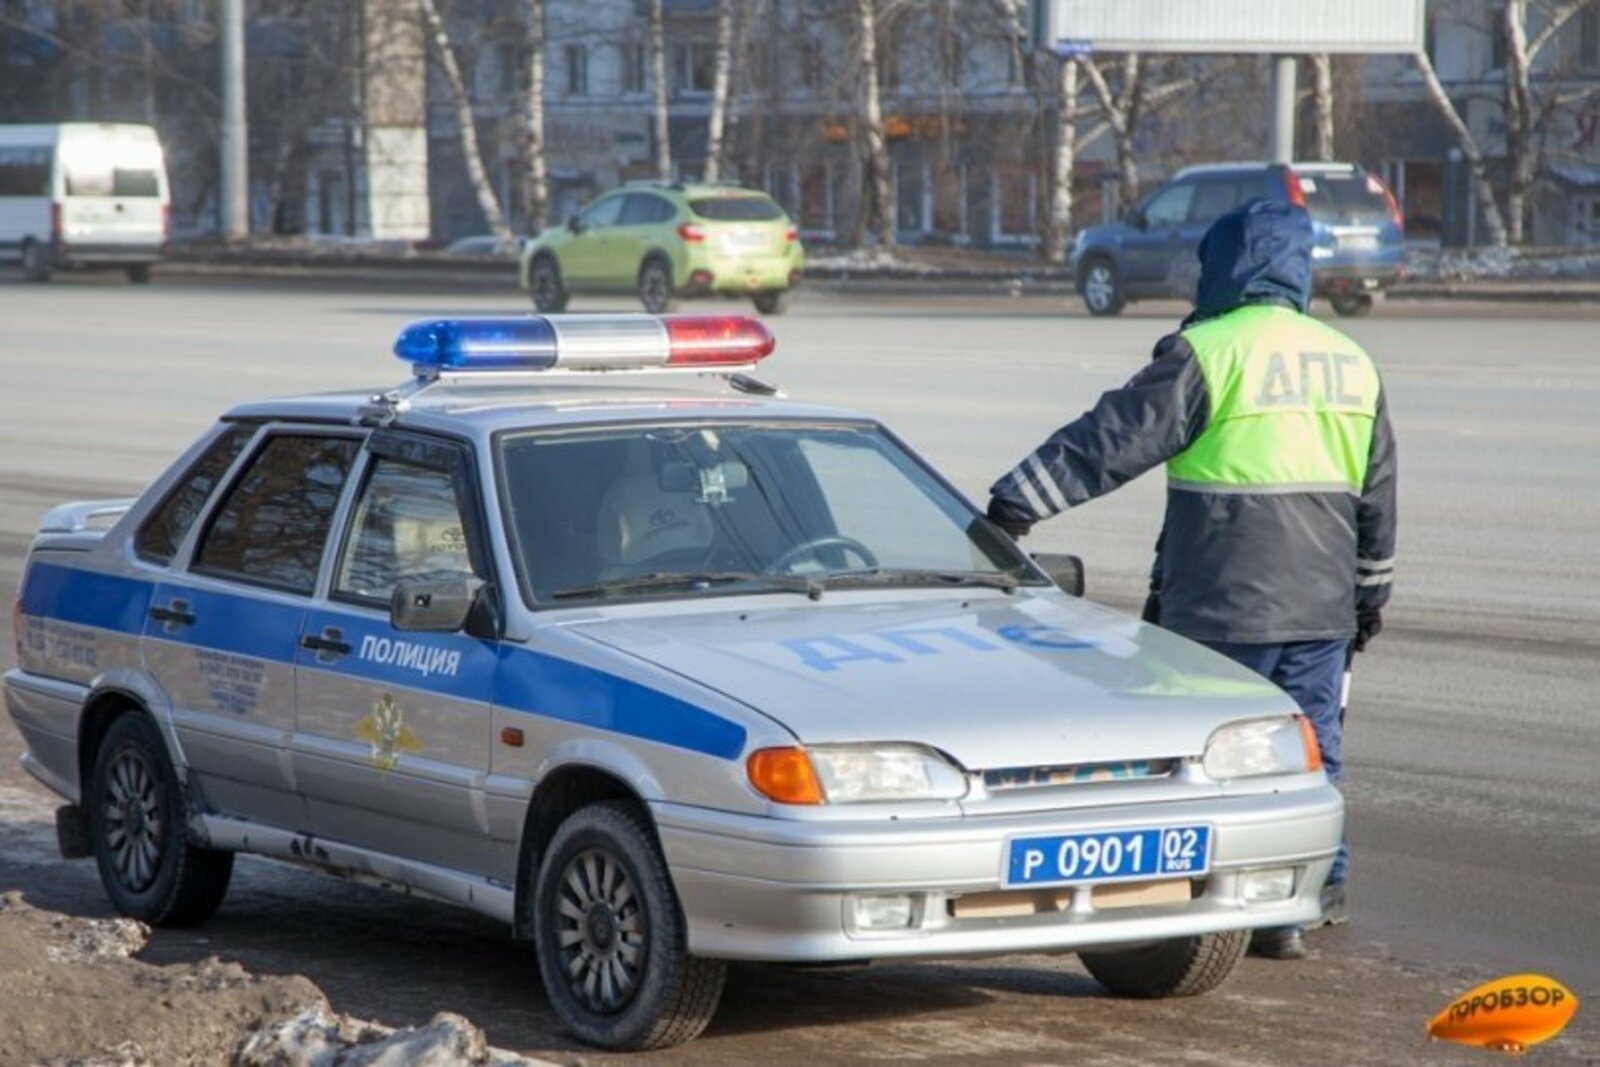 Пресс-служба ГИБДД Башкирии обратилась к местным жителям с предупреждением